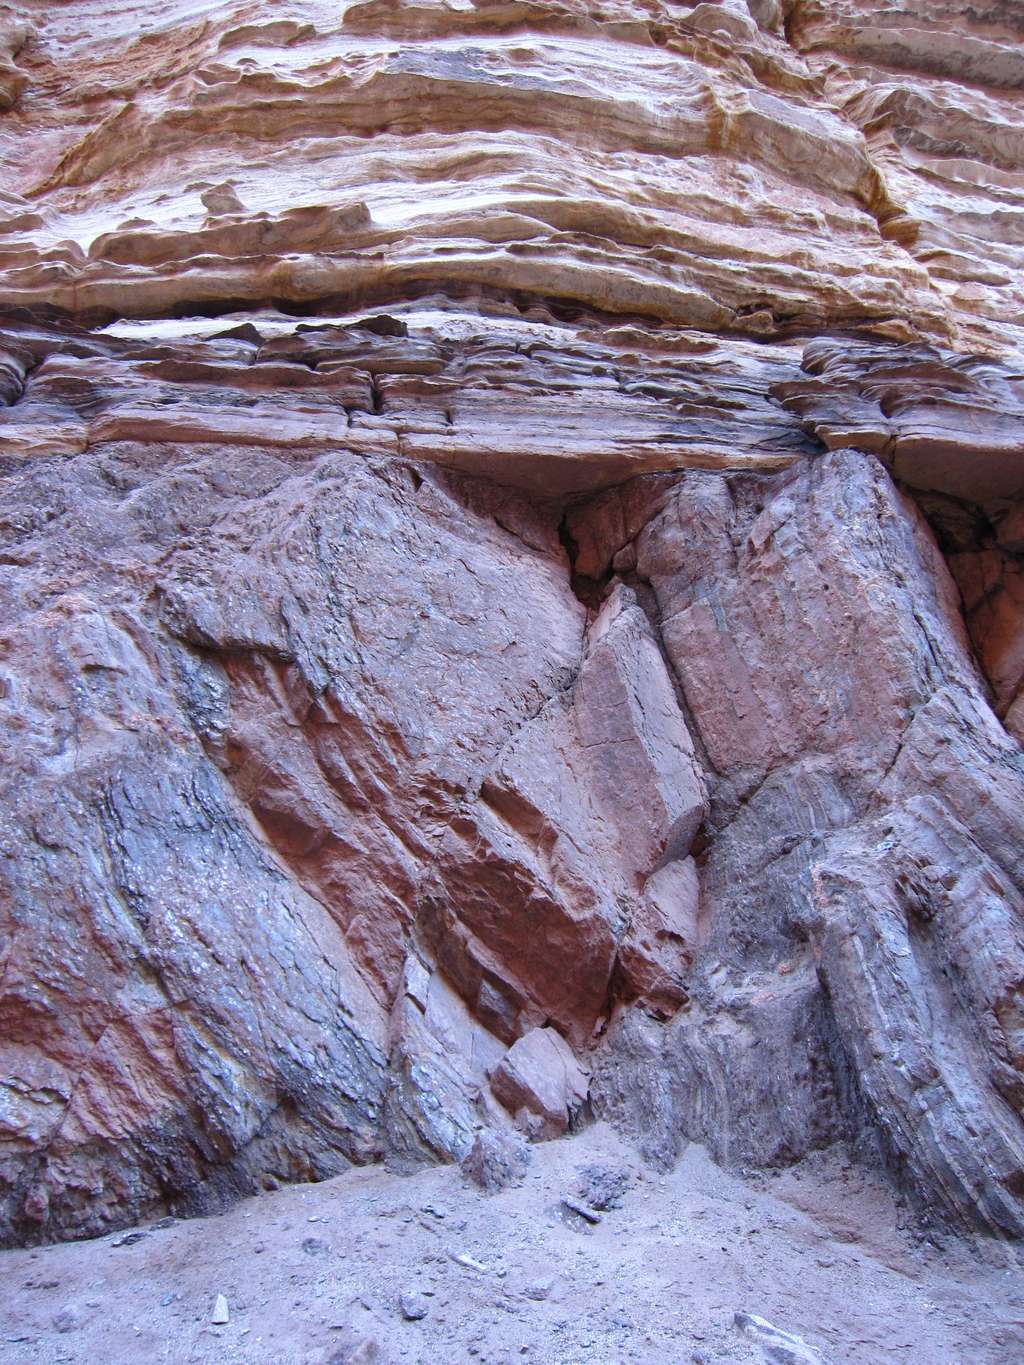 La Grande discordance vue dans le Grand Canyon. On note la différence d'angle entre les strates obliques de l'unité d'âge paléoprotérozoïque à la base et les strates horizontales de l'unité d'âge cambrien au-dessus. Un milliard d'années sépare la formation de ces deux unités. © Chris M Morris, Wikimedia Commons, CC by 2.0 